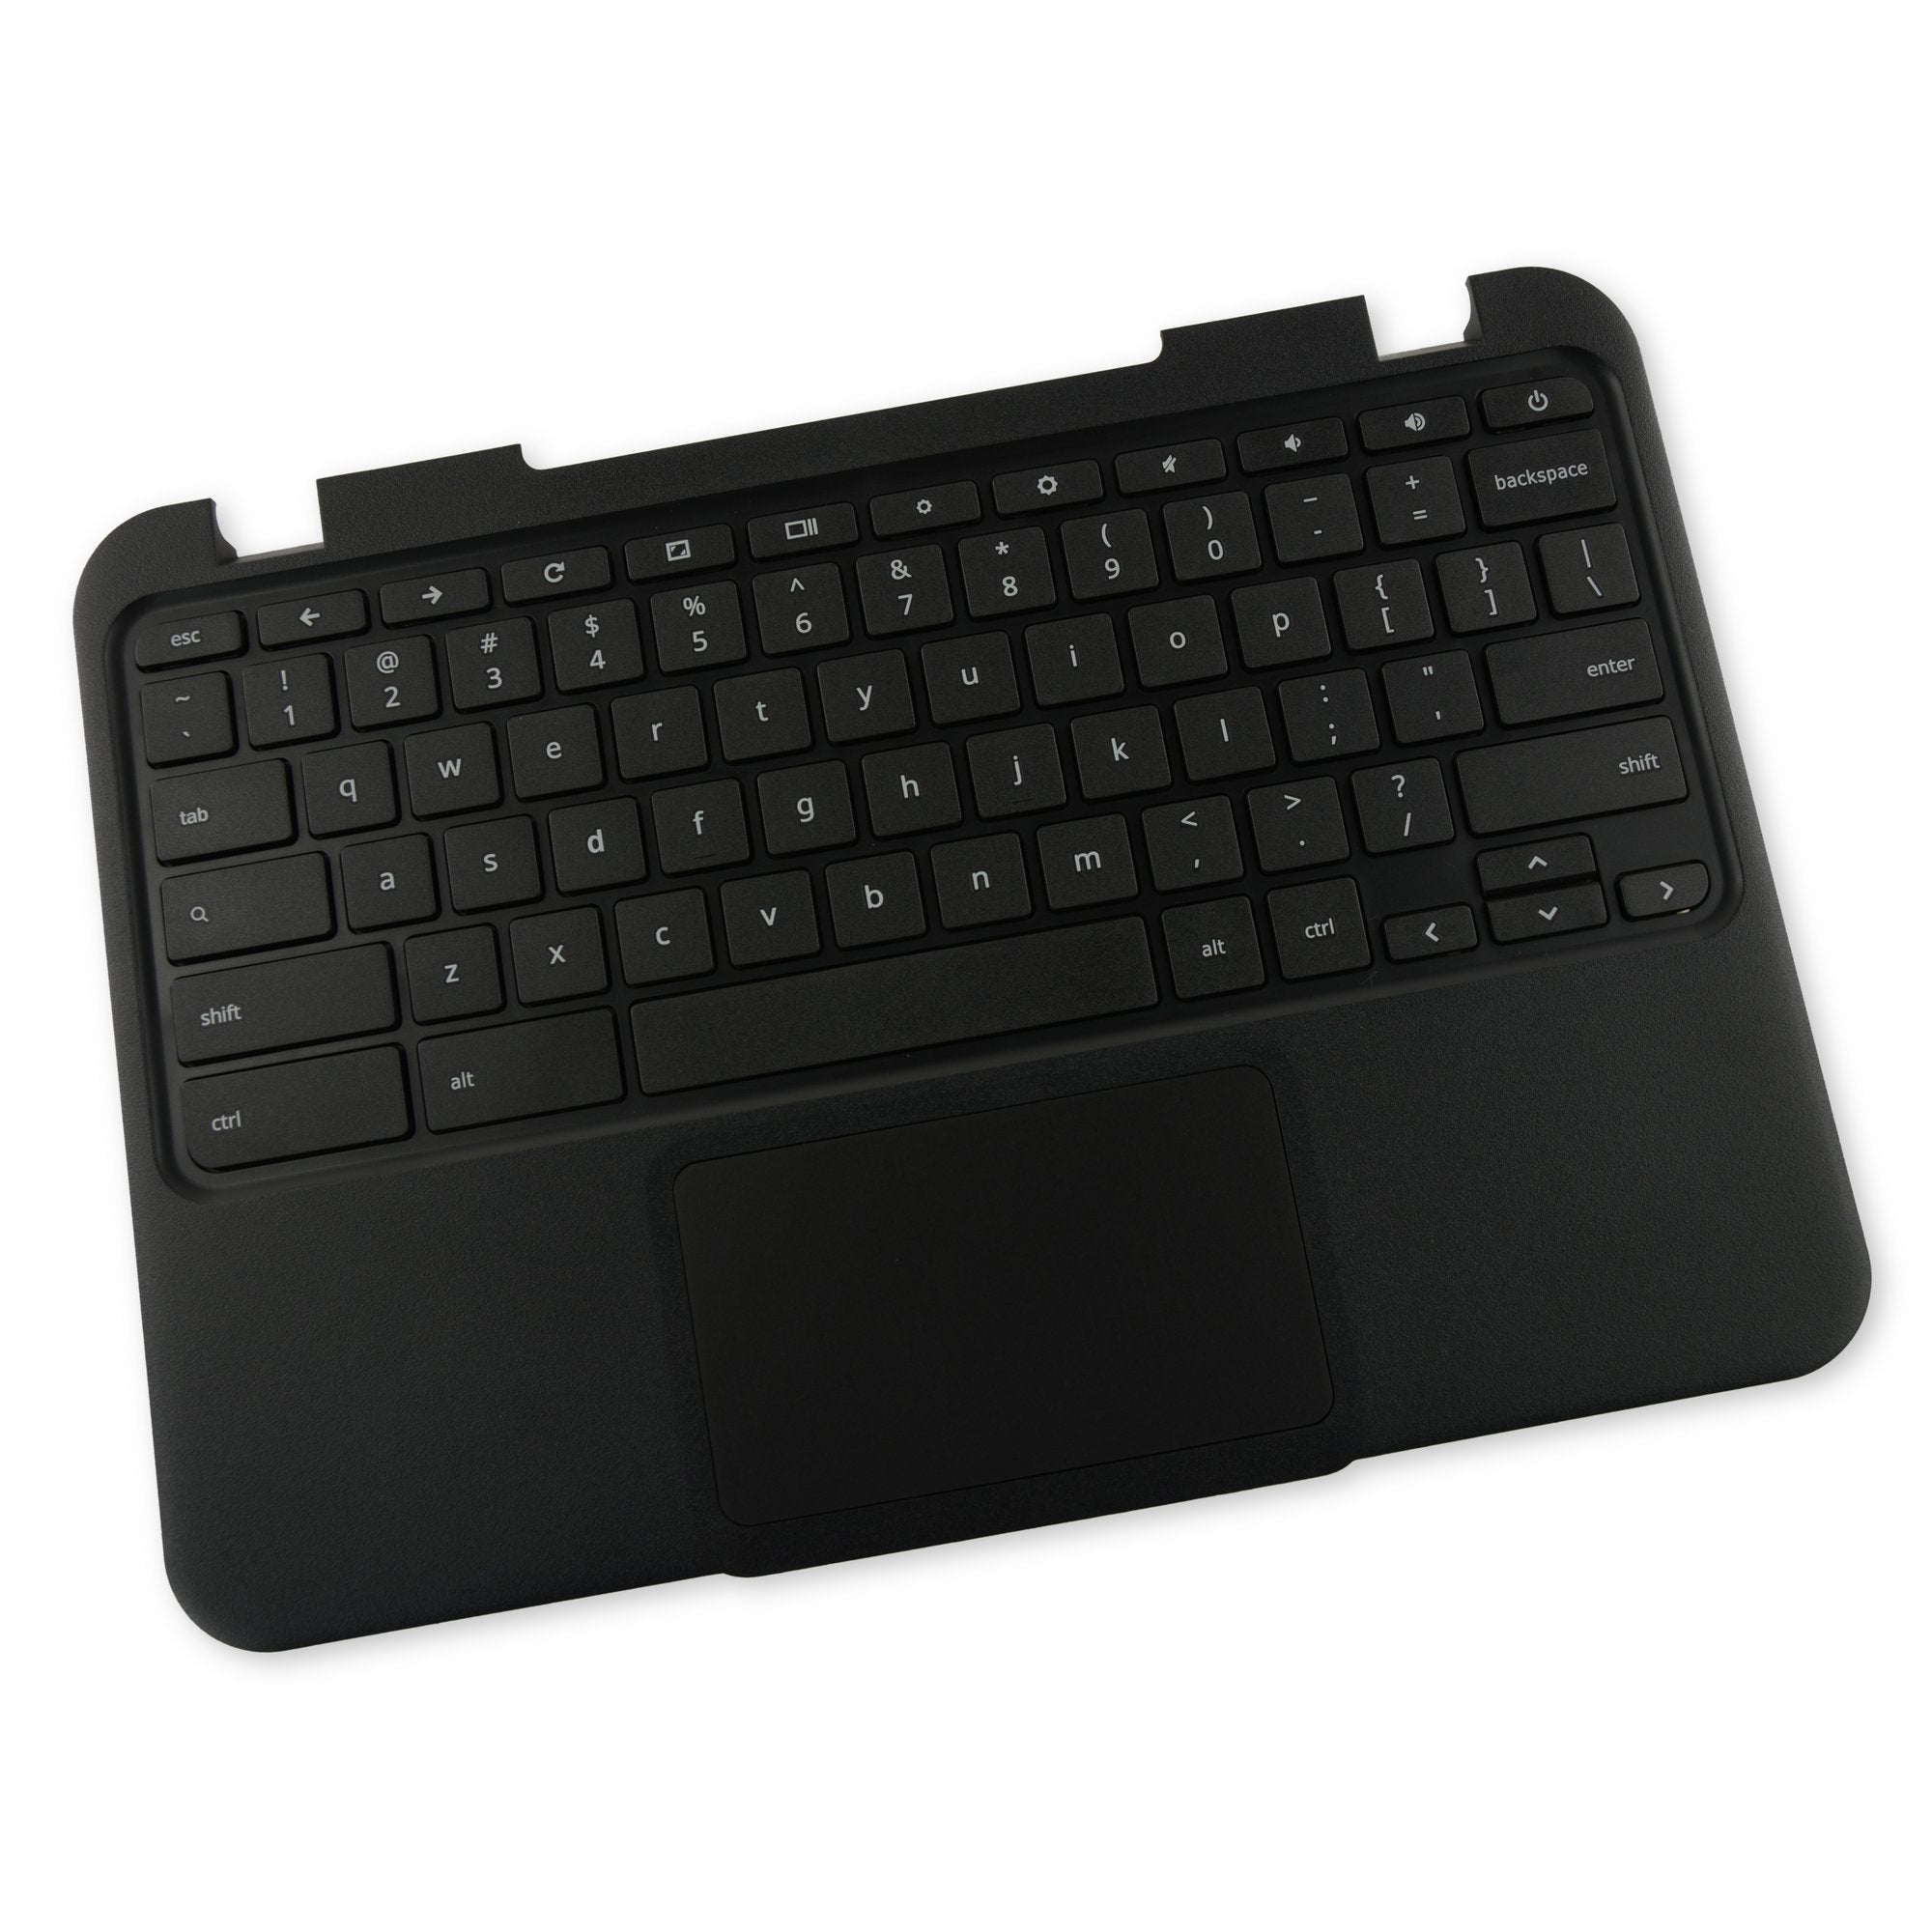 Lenovo Chromebook 11 N22 Palmrest Keyboard Touchpad Assembly